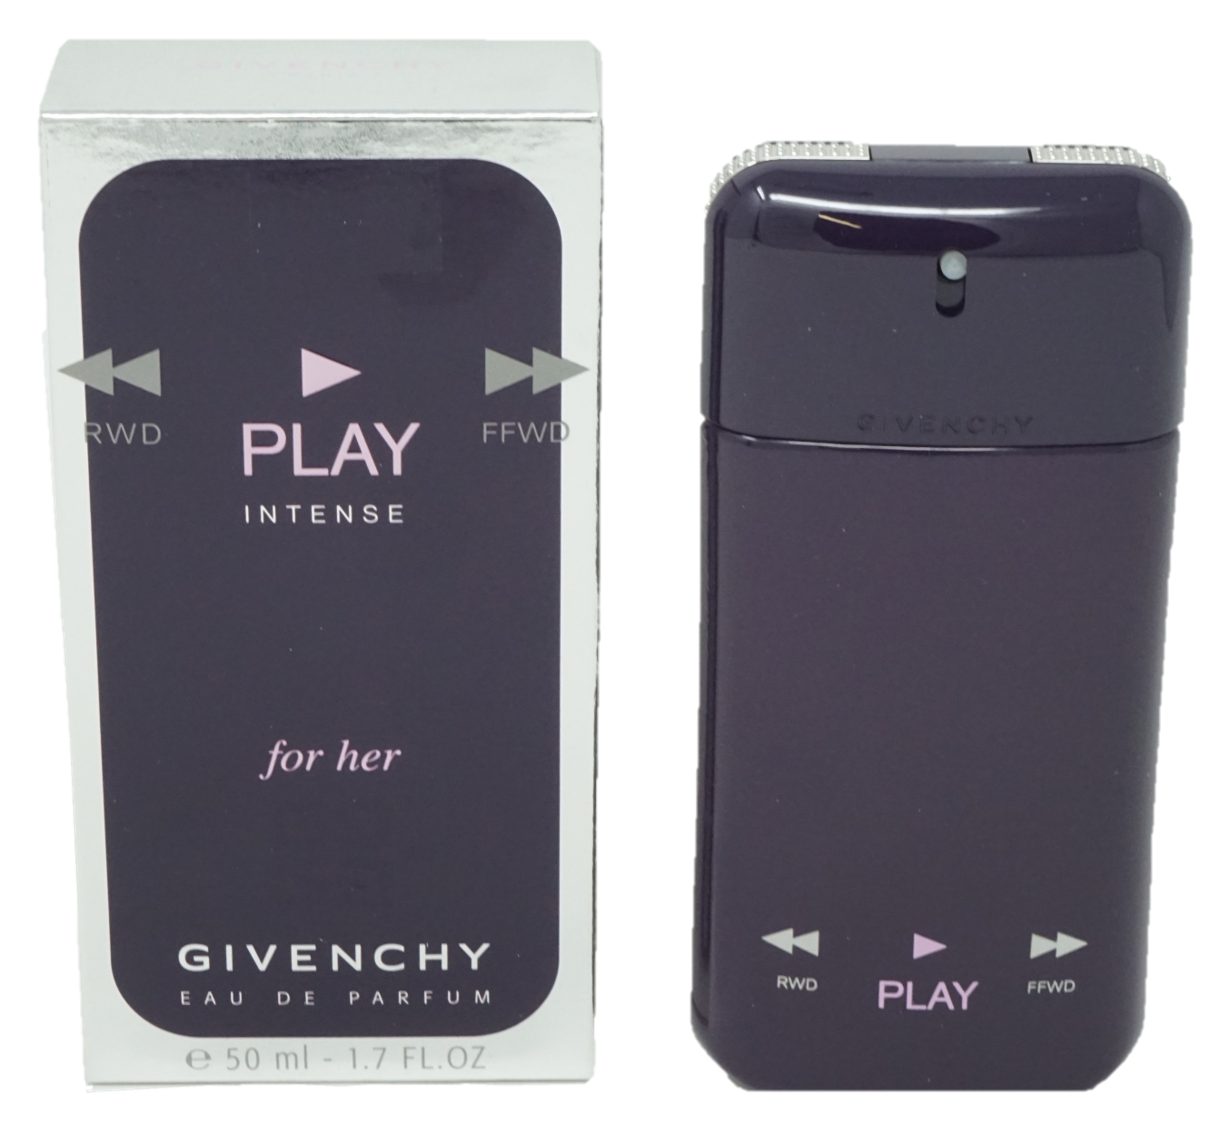 GIVENCHY Eau de Parfum Givenchy 50ml For Parfum Intense Play Eau Her de